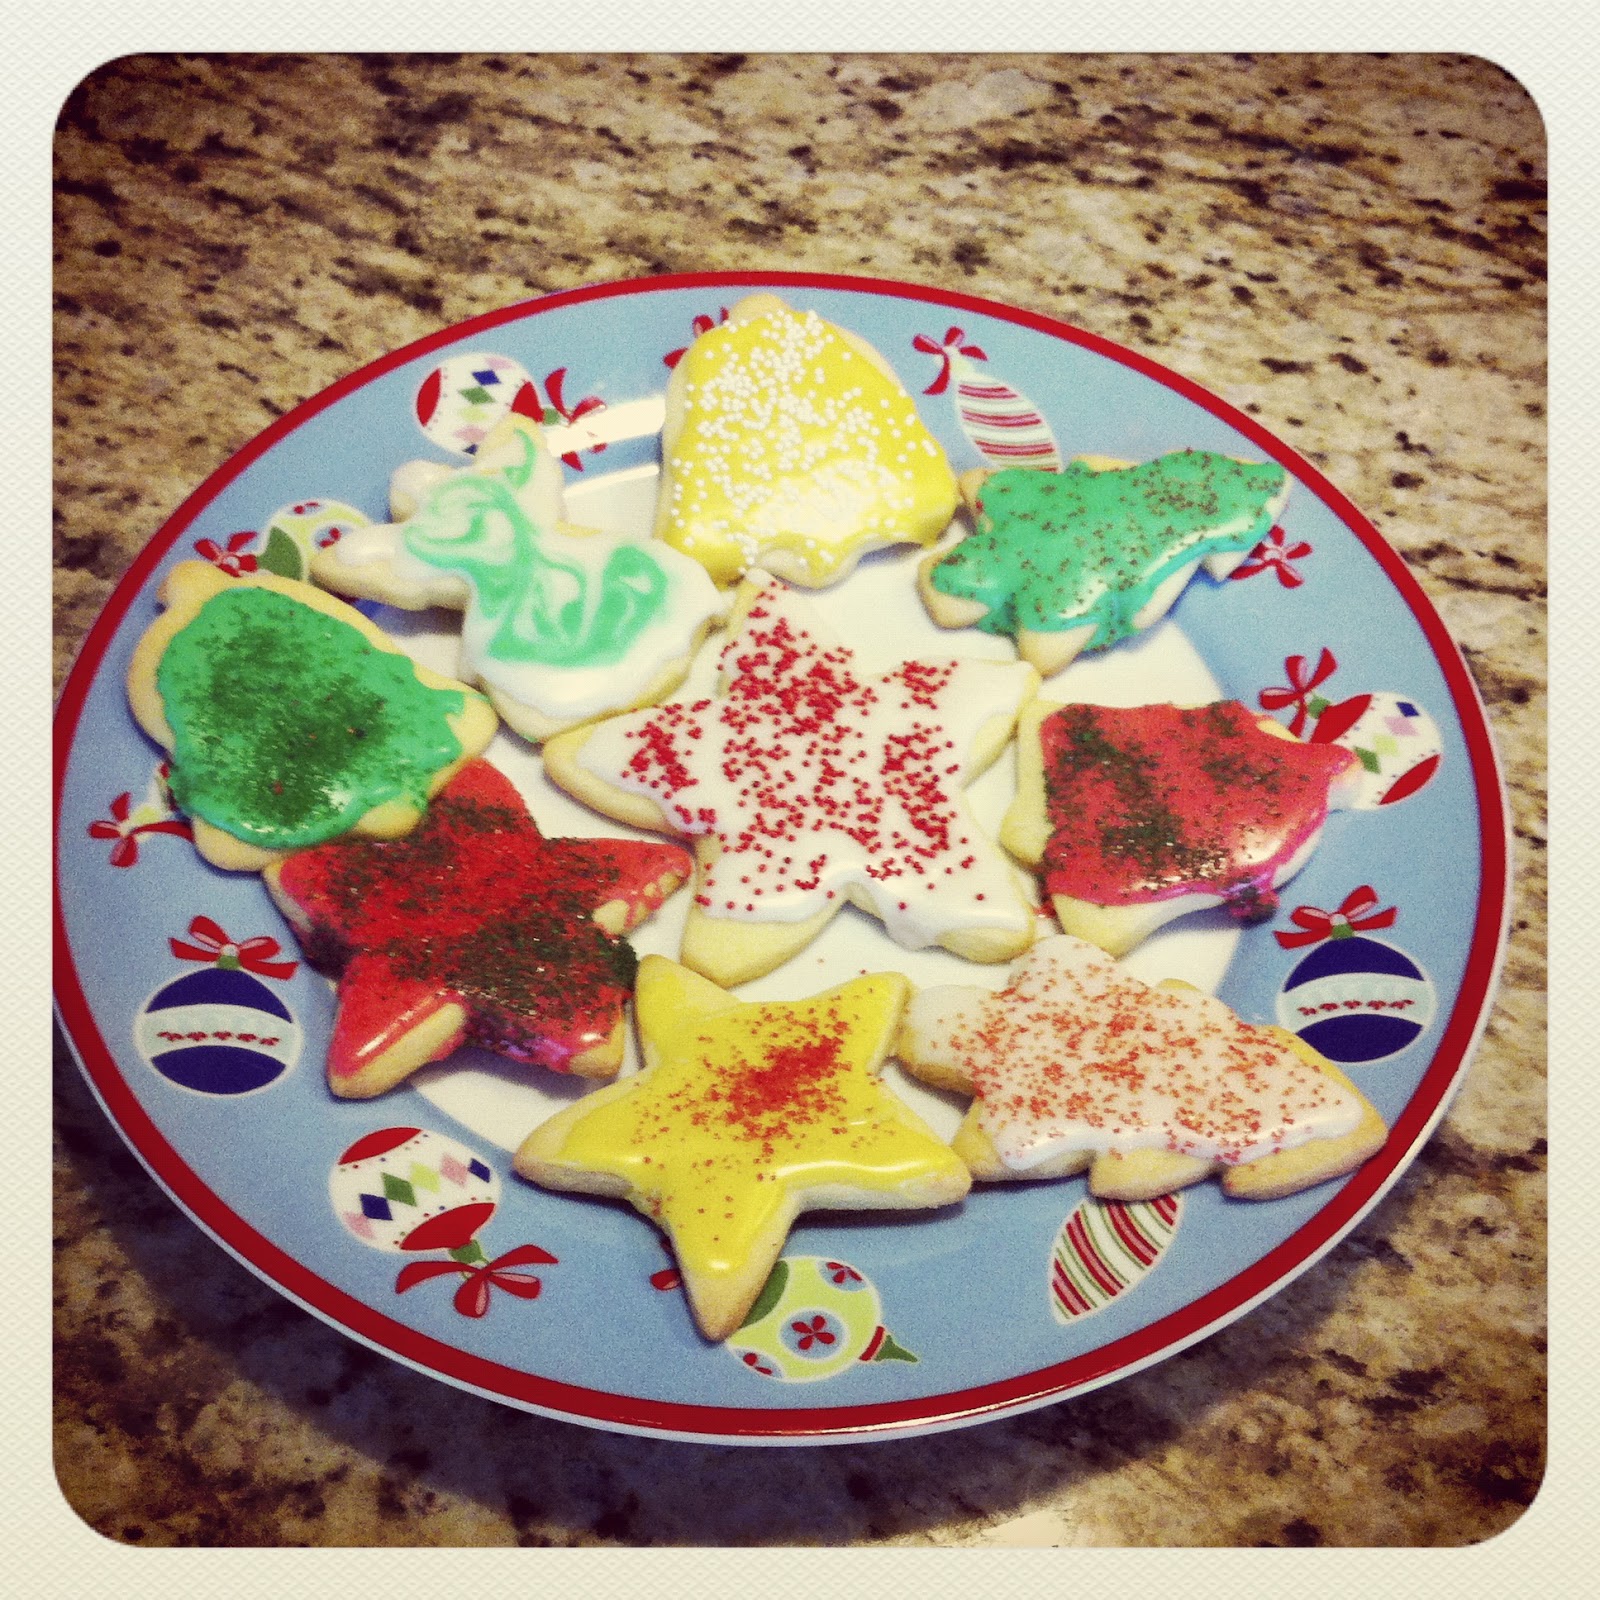 Christmas, Christmas cookies, Christmas traditions, ultimate Christmas cookie, family